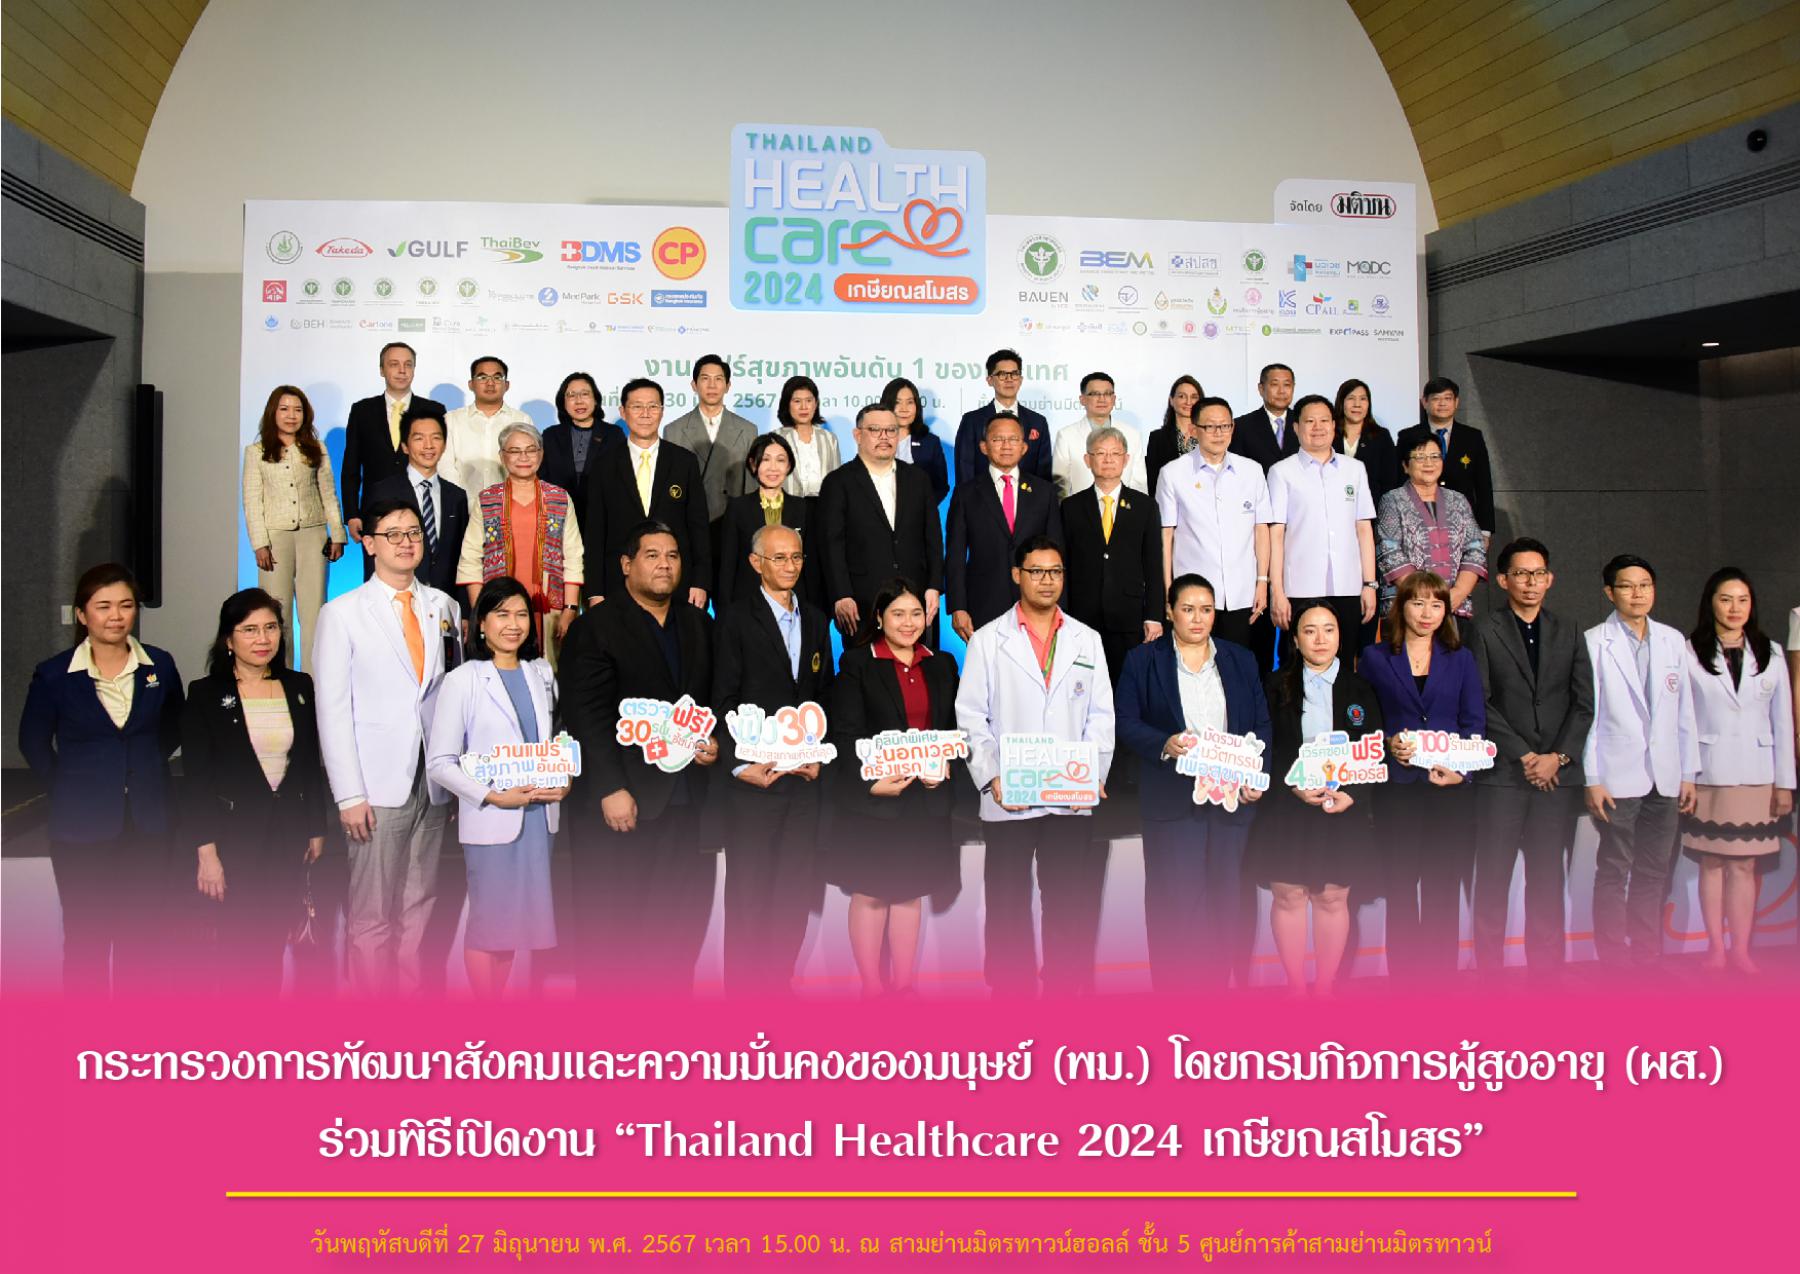 กระทรวงการพัฒนาสังคมและความมั่นคงของมนุษย์ (พม.) โดยกรมกิจการผู้สูงอายุ (ผส.) ร่วมพิธีเปิดงาน “Thailand Healthcare 2024 เกษียณสโมสร”